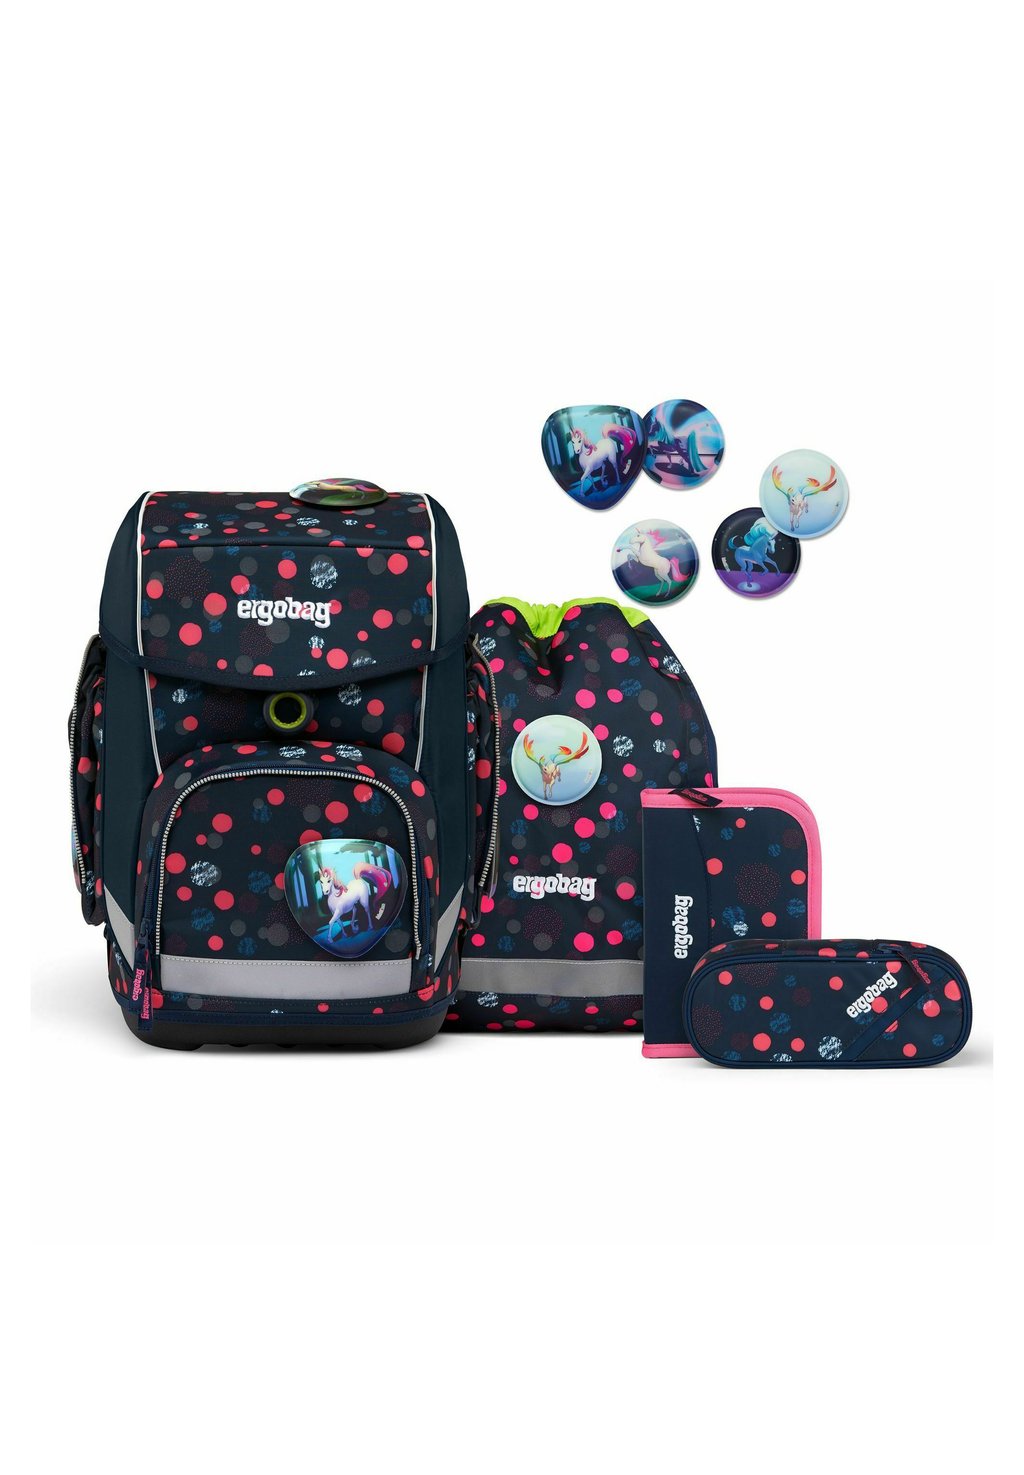 Комплект школьных сумок CUBO SET 5TLG INKL Ergobag, цвет phantbärsiewelt